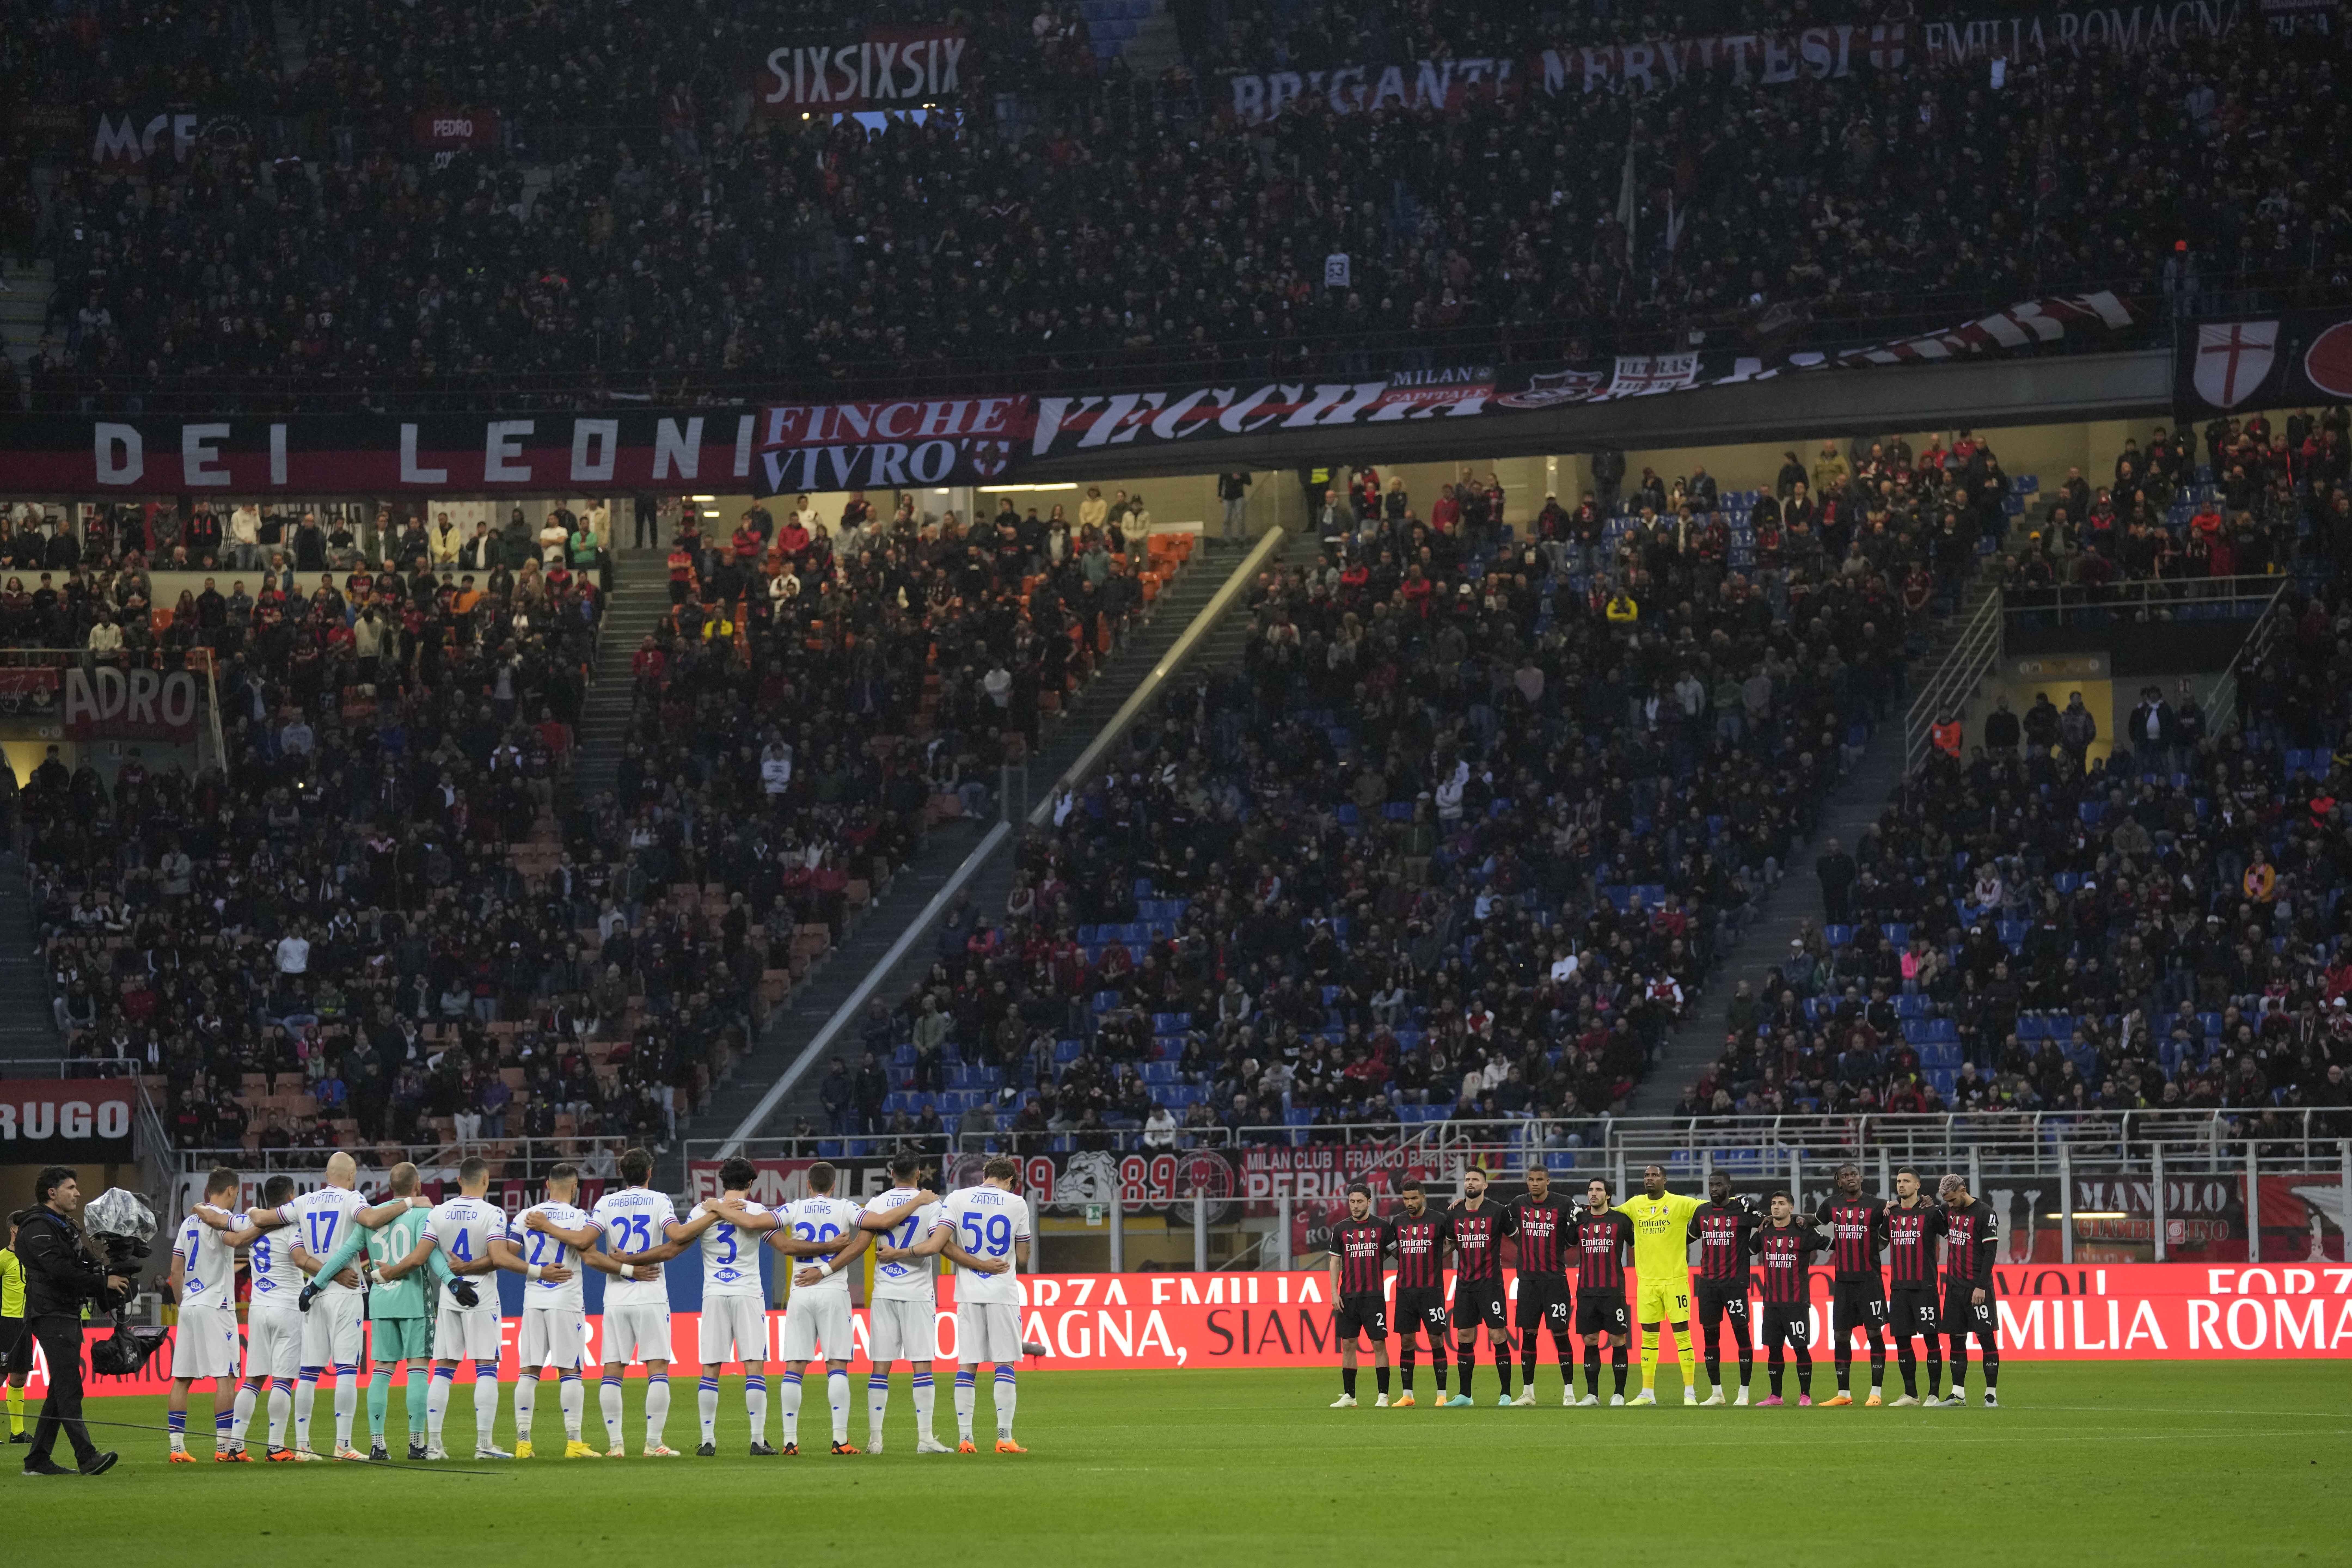 Primăria Milanului vrea să renoveze San Siro pentru ca Inter şi AC Milan să nu părăsească arena